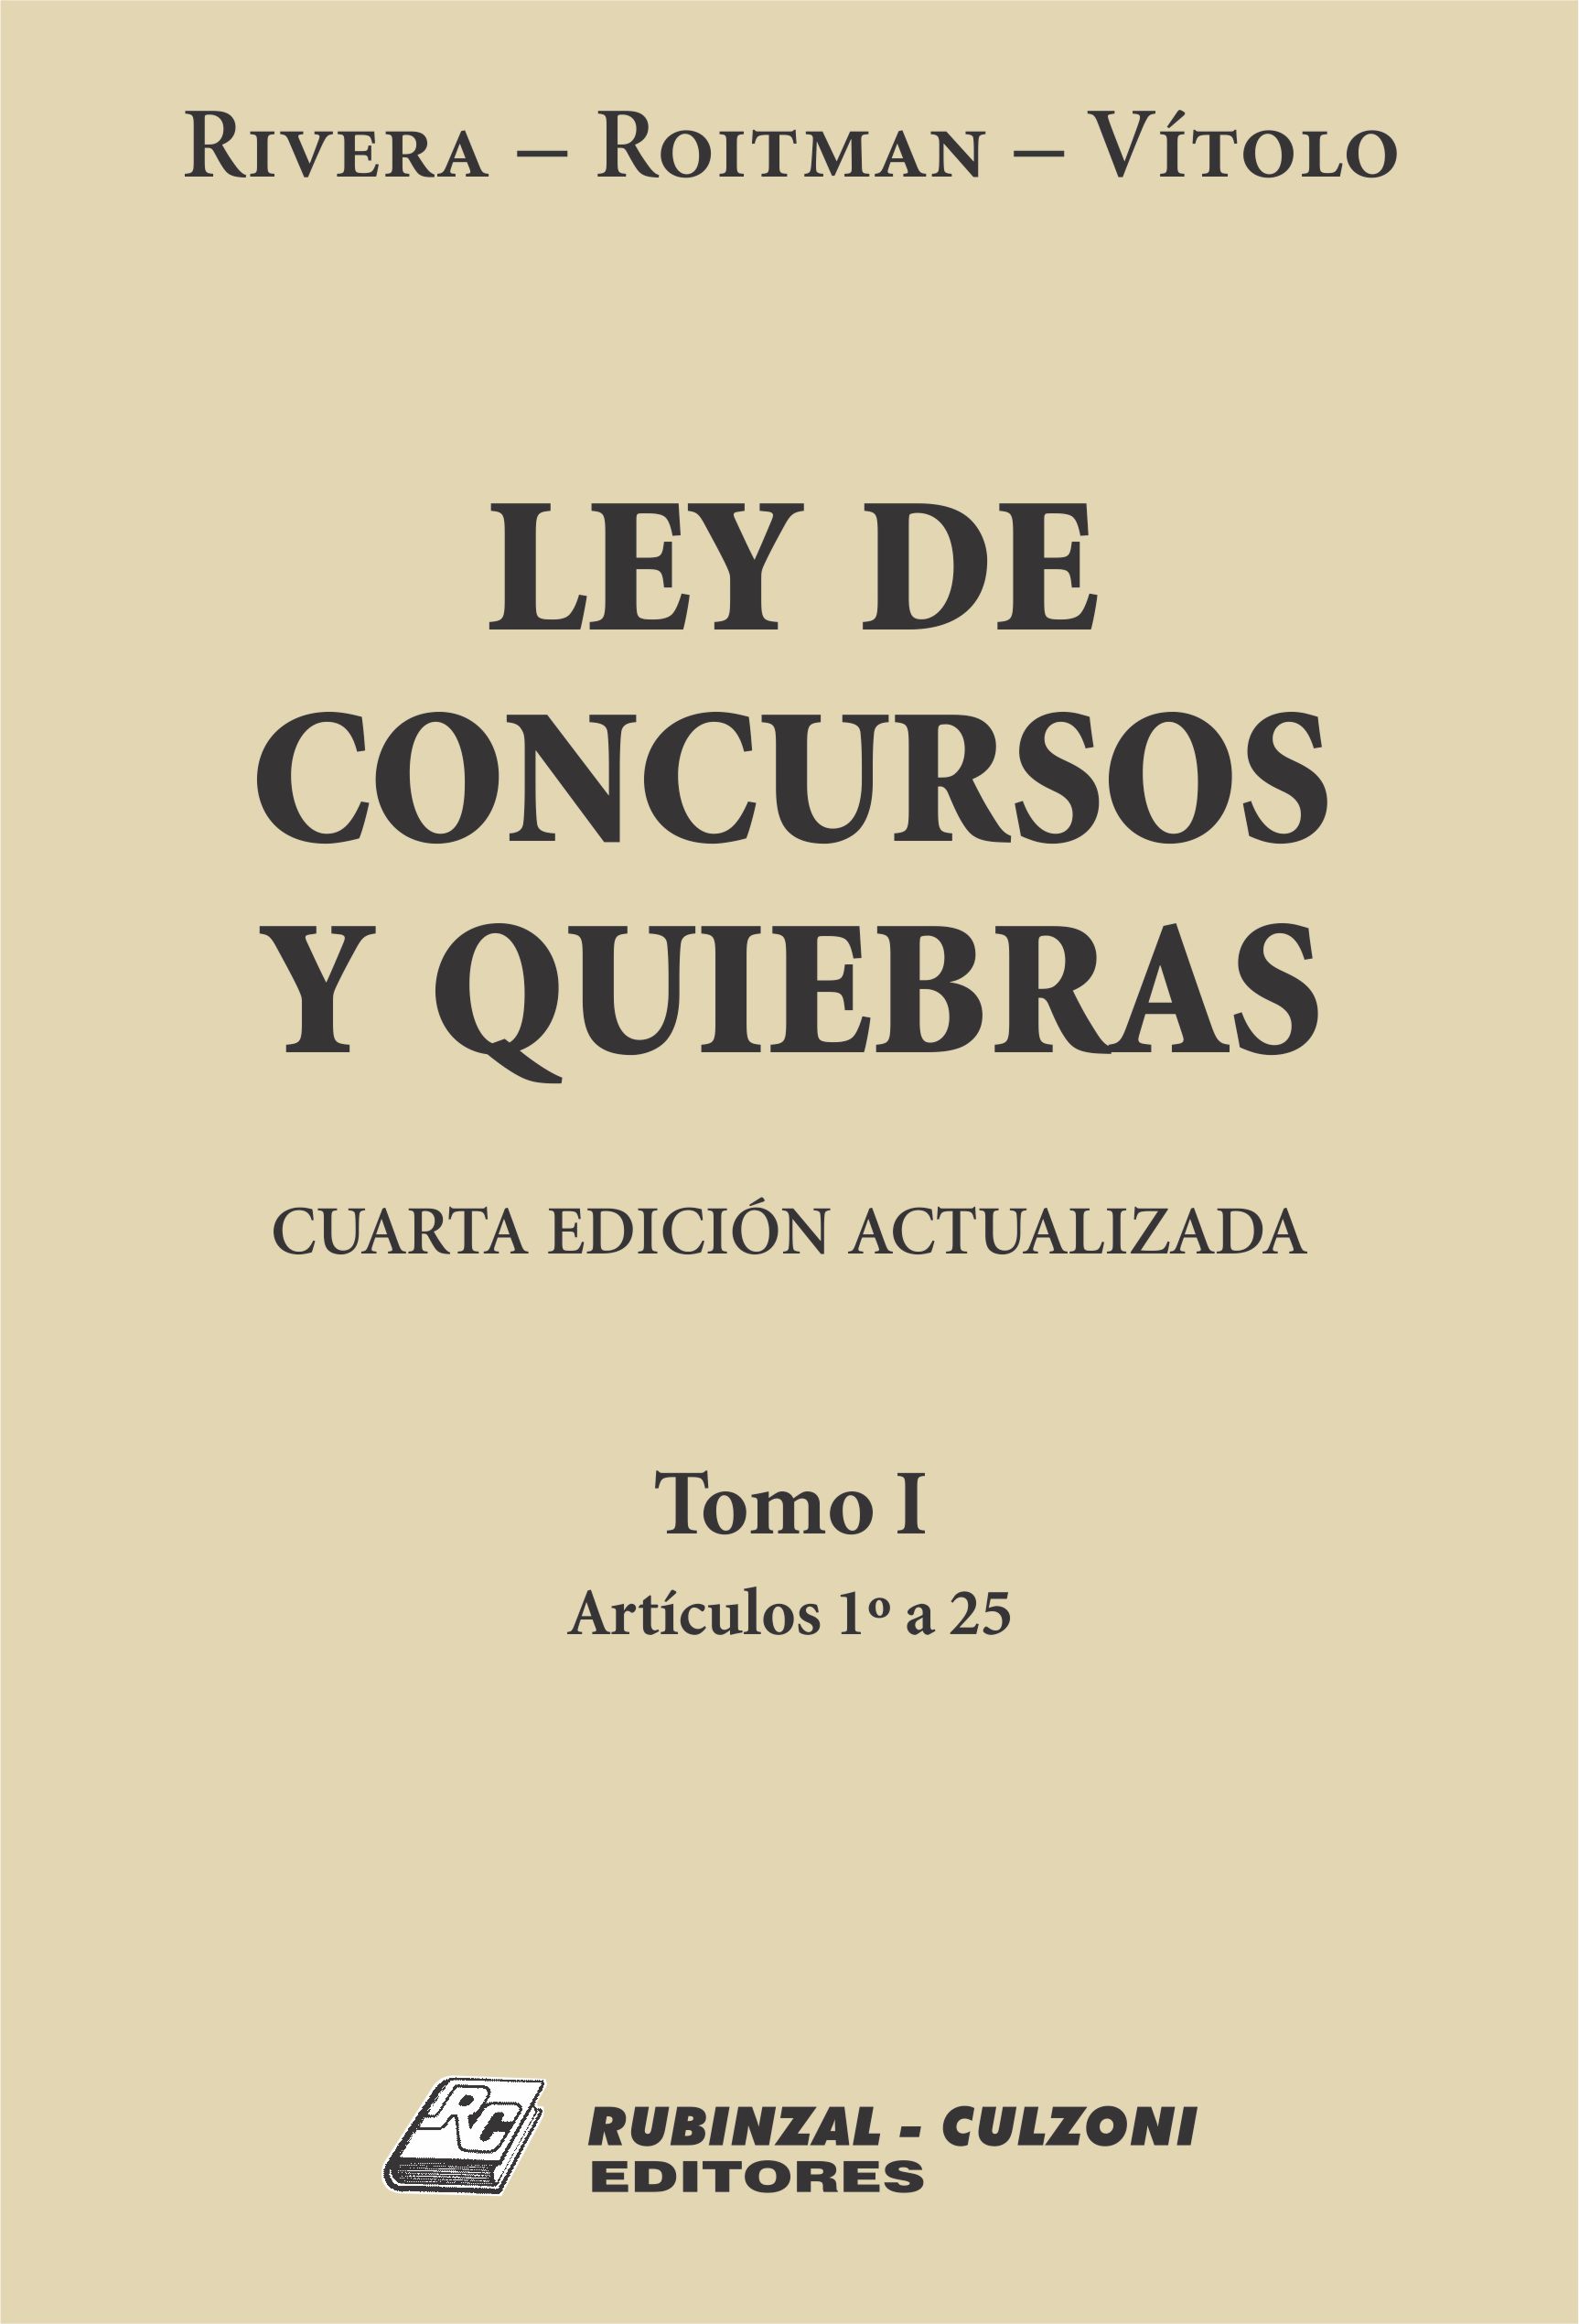 Ley de Concursos y Quiebras. - Tomo I (Artículos 1 a 25). 4ª Edición actualizada.